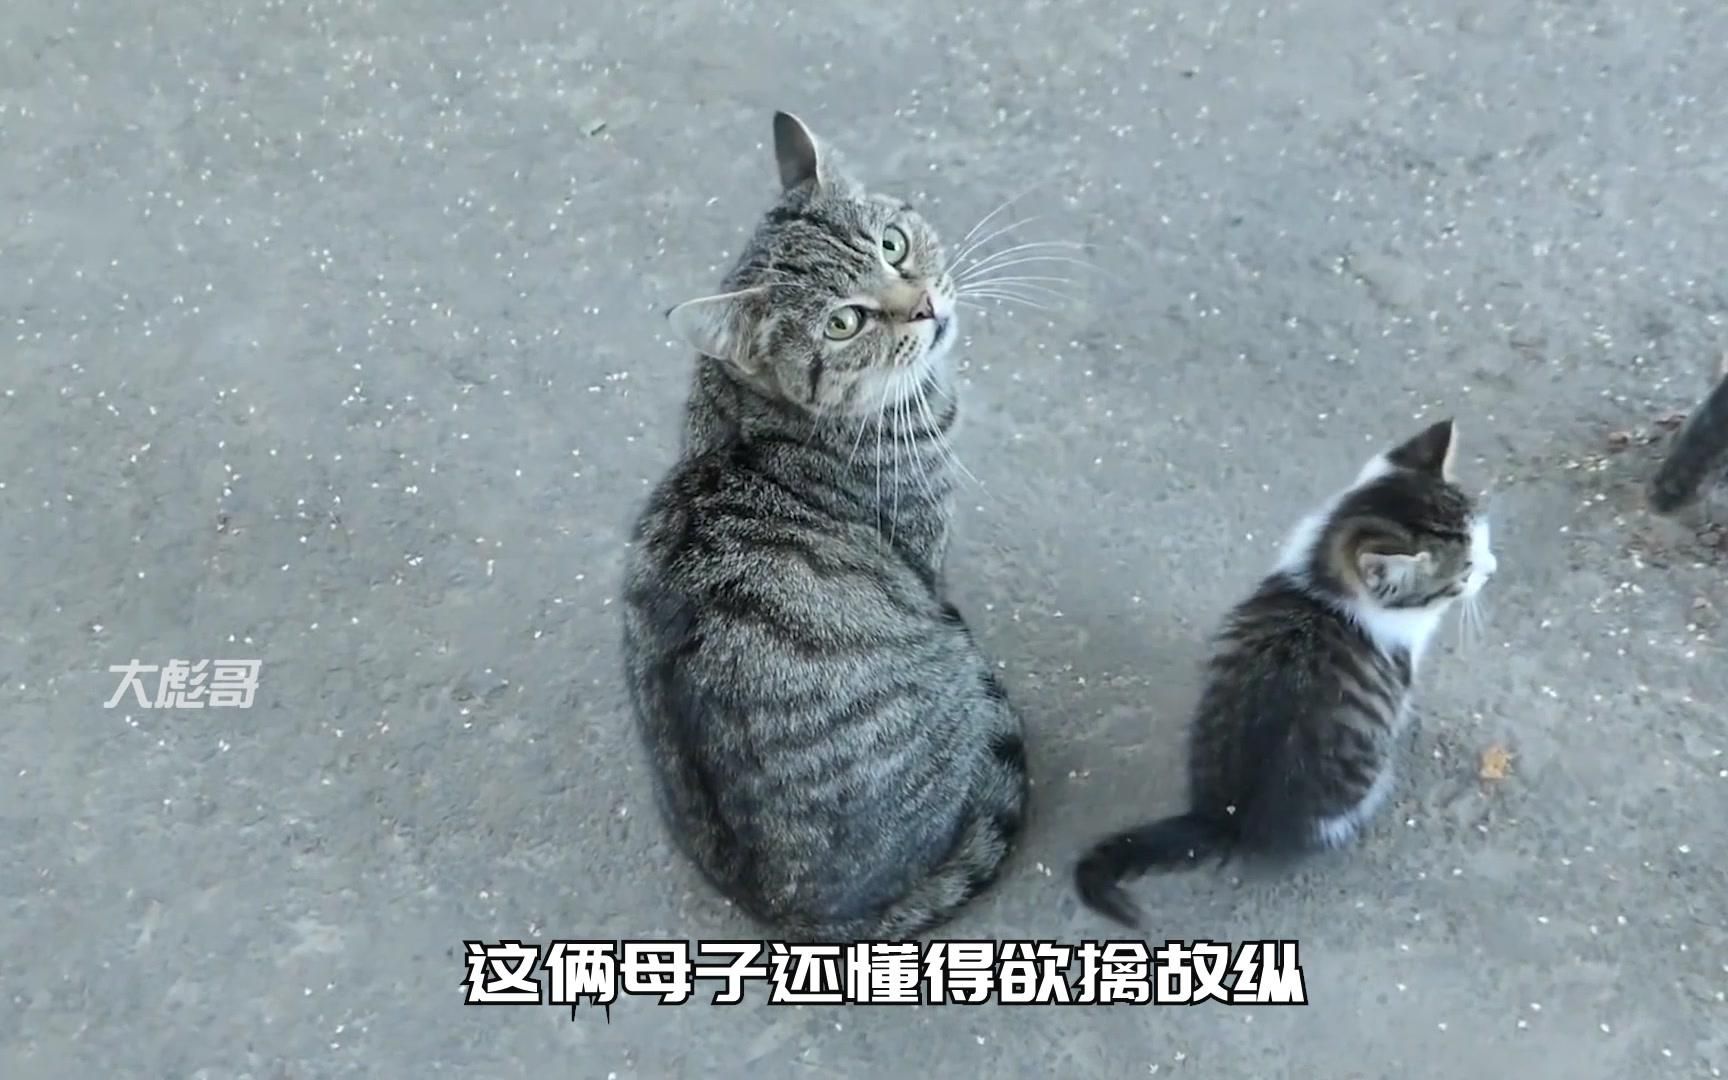 [图]猫妈妈带着小猫在路边蹲点、希望有人能收养它们回家、伟大的母爱